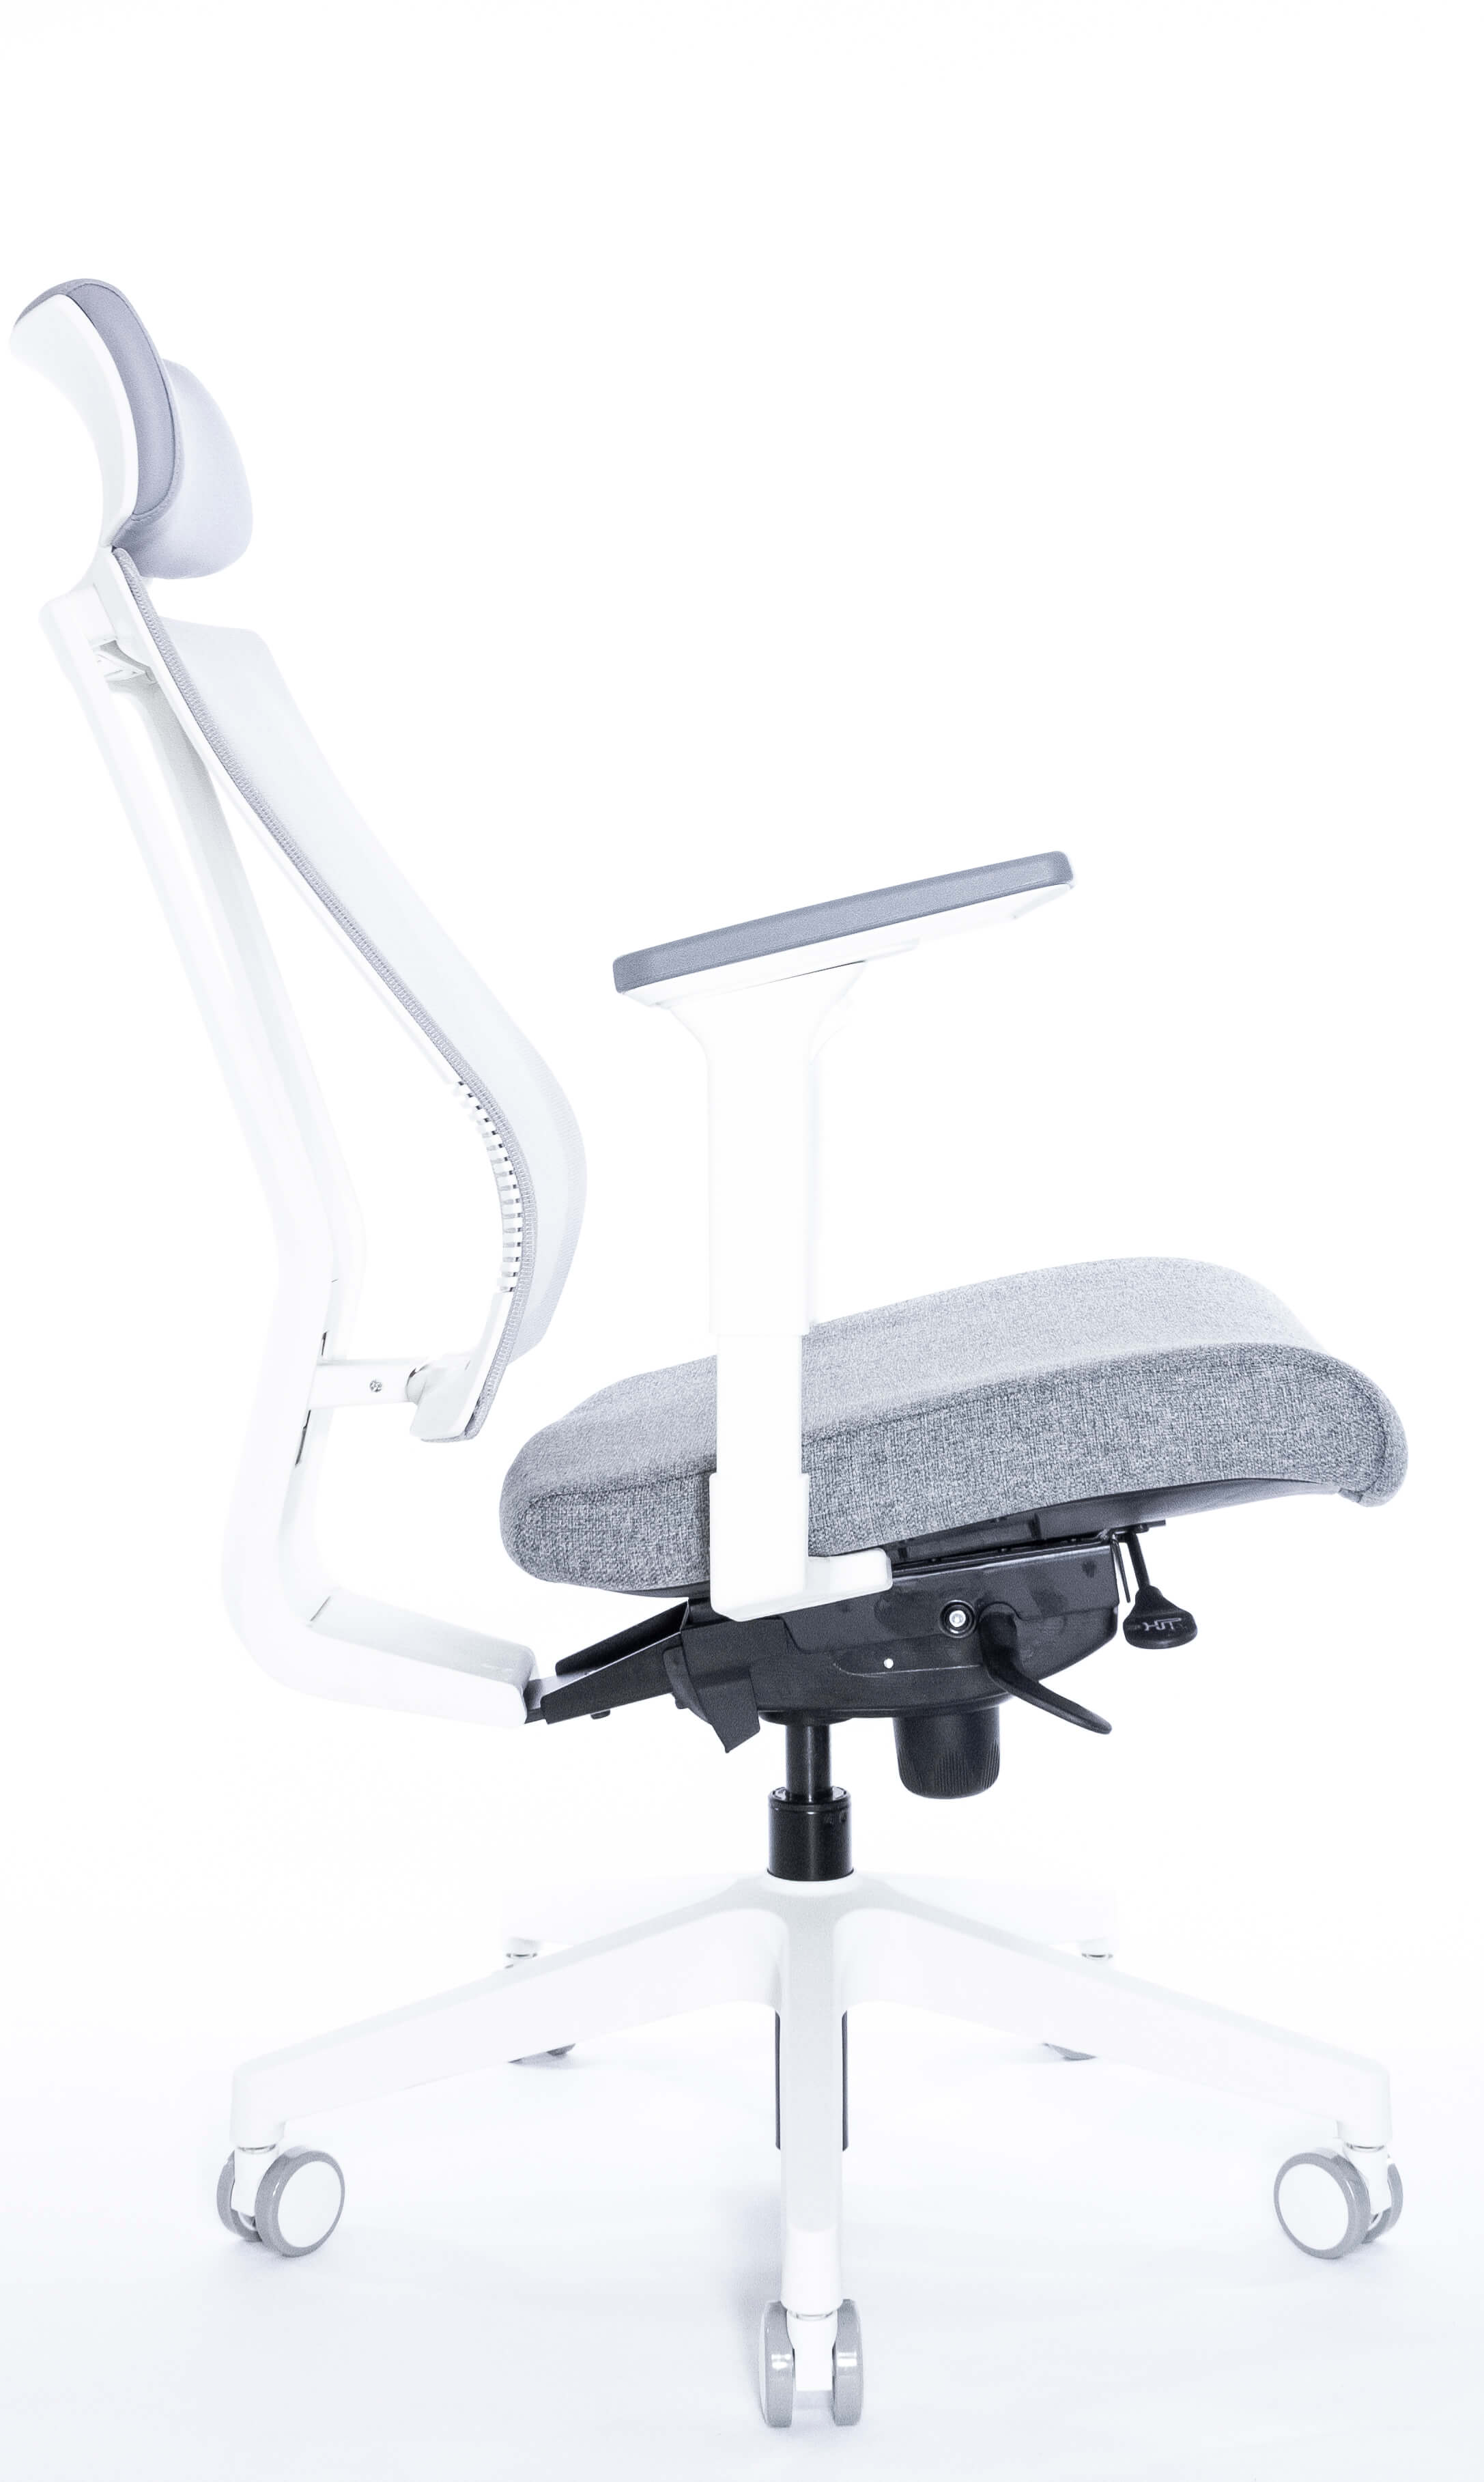 Эргономичное кресло Falto G-1 GON 01WAL/GY-GY (каркас белый, спинка серая, сиденье серое)